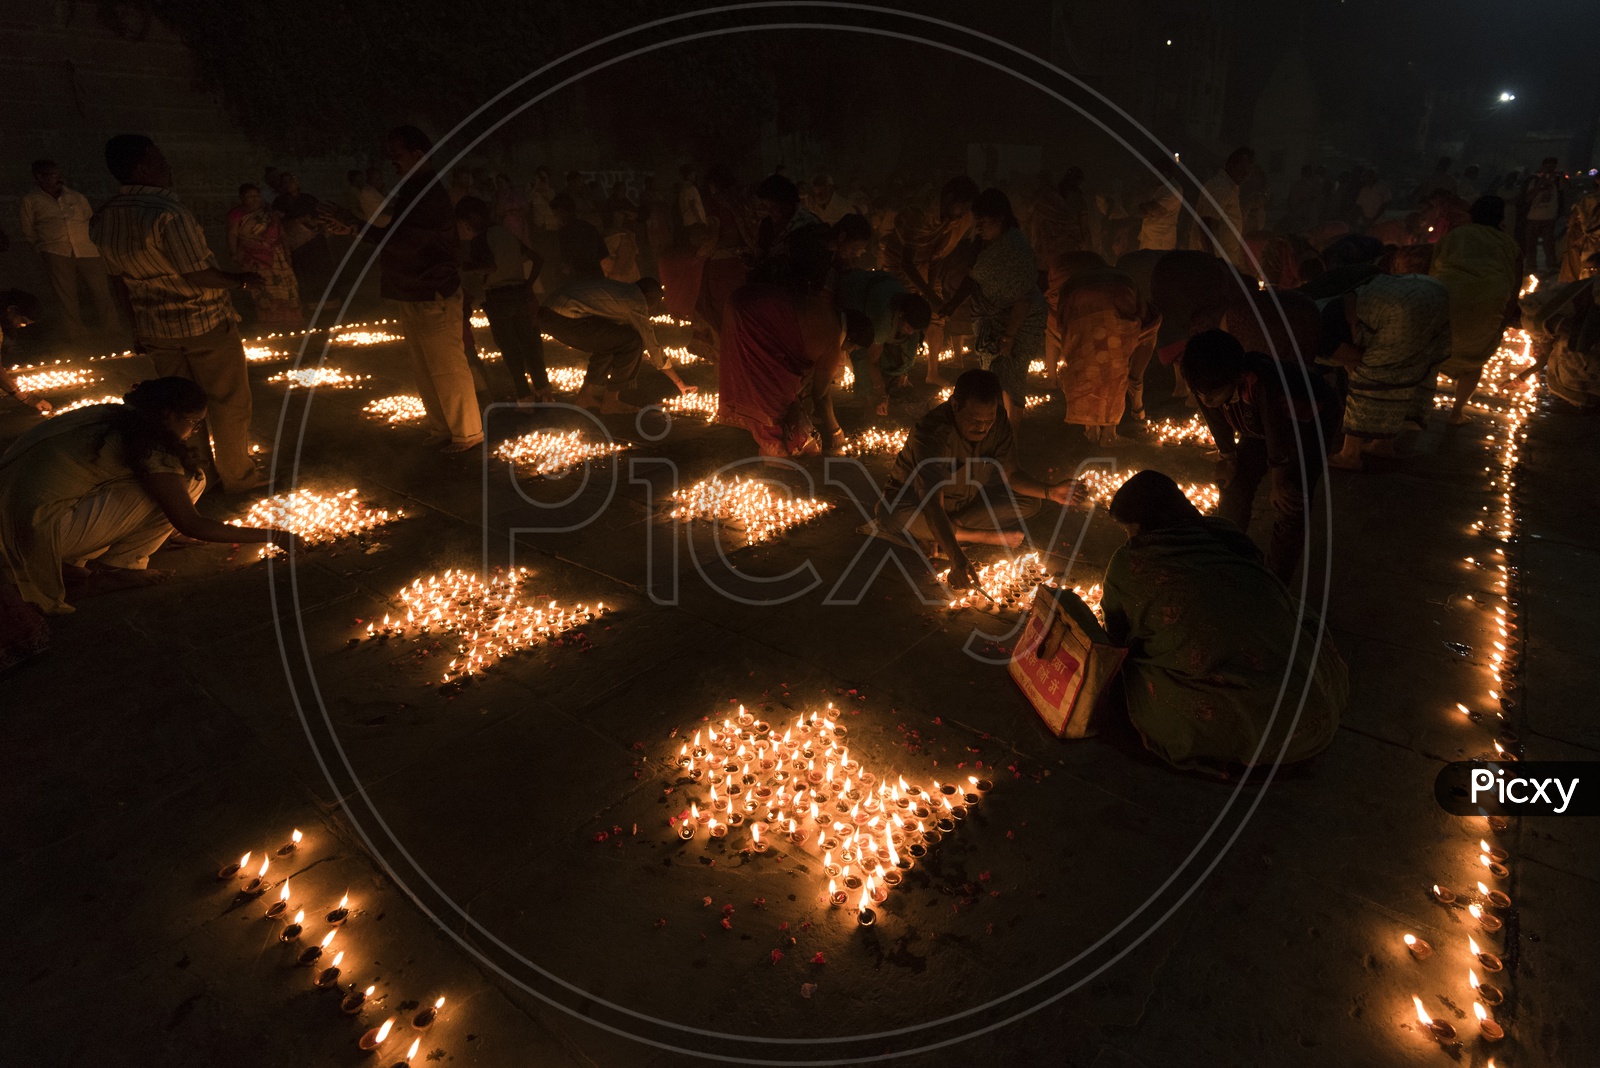 People Lightening up diya's in Varanasi